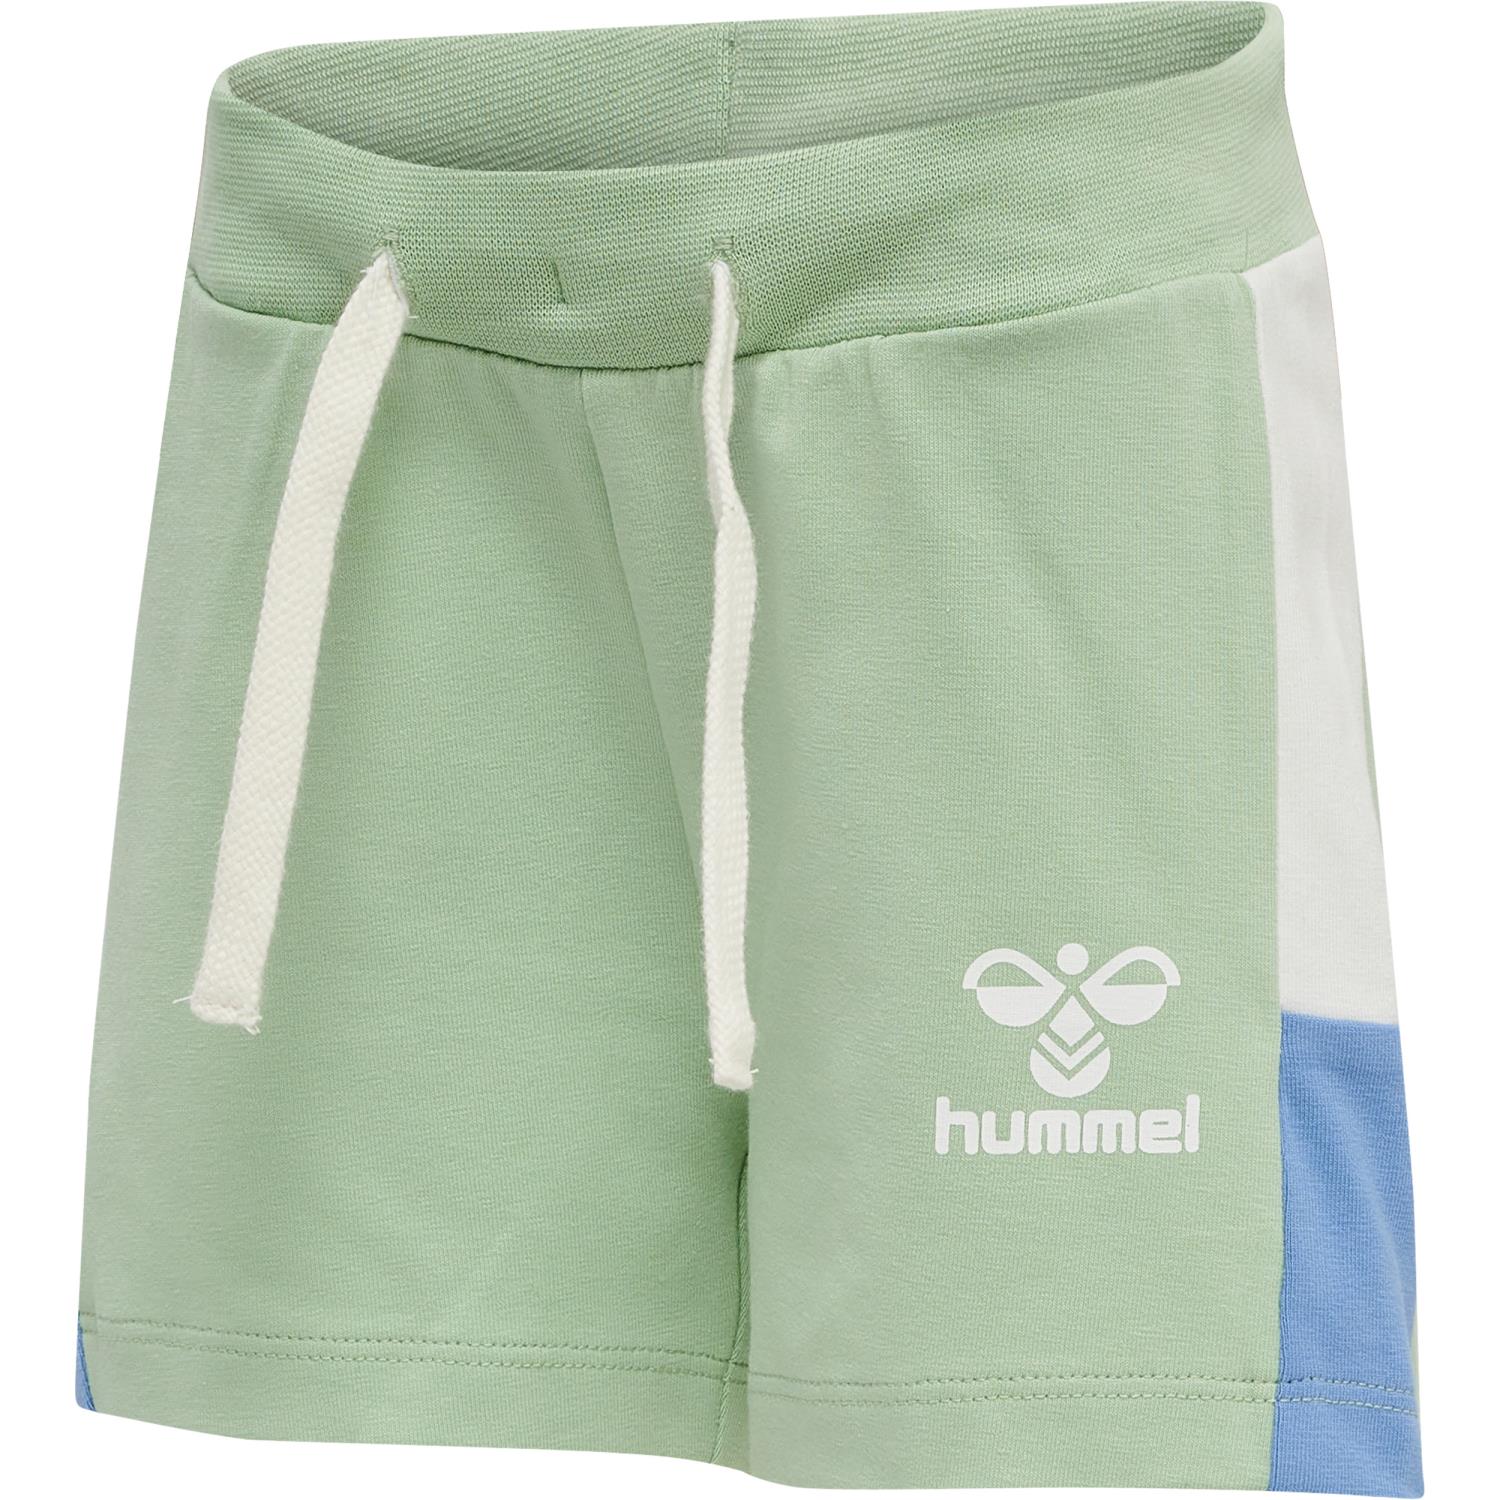 Hummel Elio Shorts - Grayed Jade